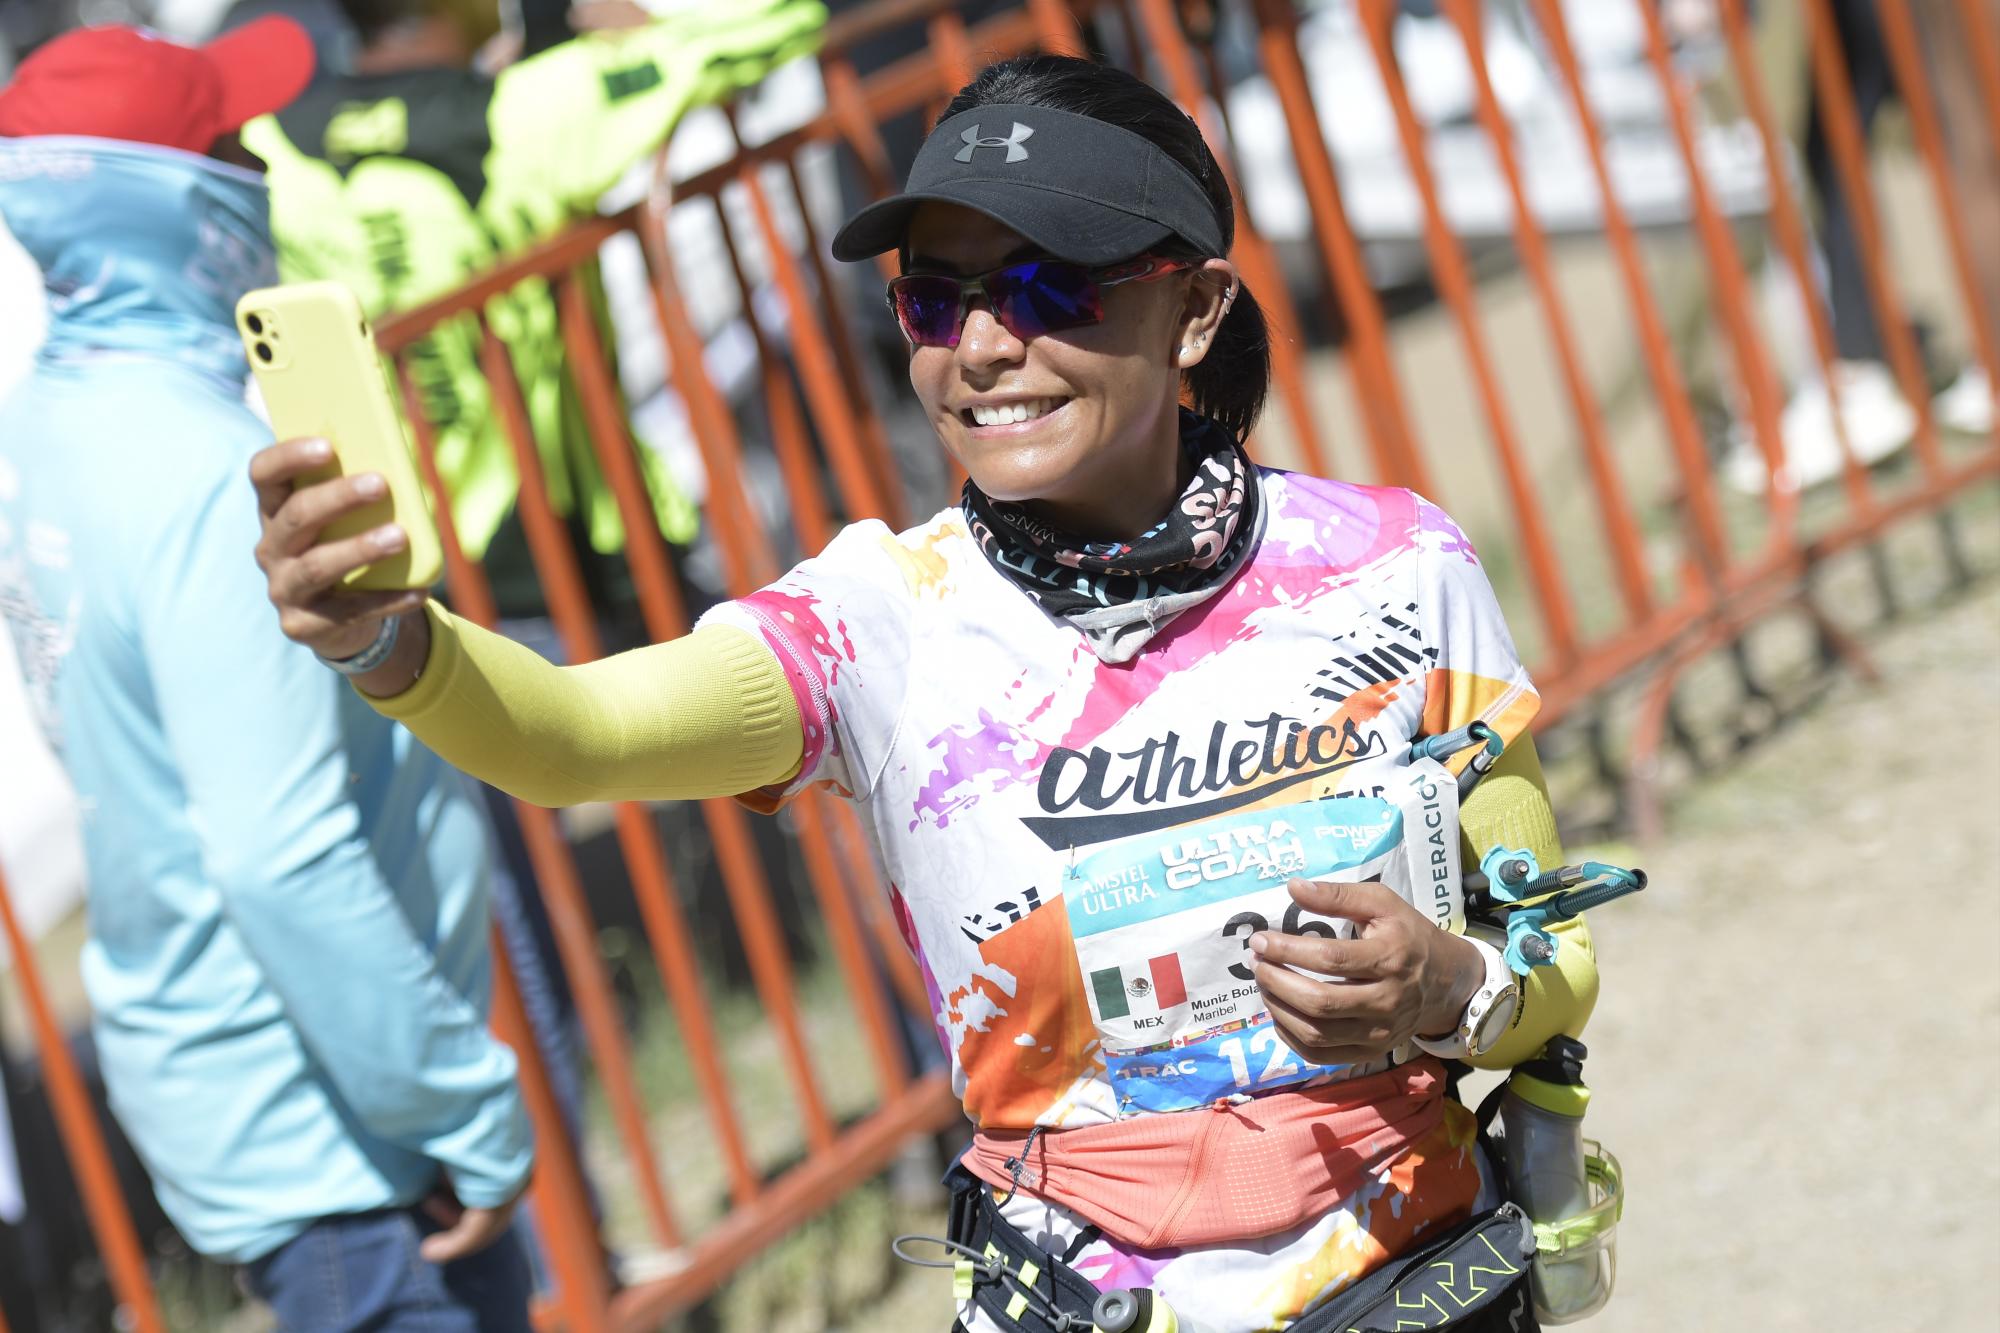 $!Mujeres y hombres de distintos lugares de Coahuila, México y el mundo, se dieron cita en una de las carreras trail más importantes del continente americano.